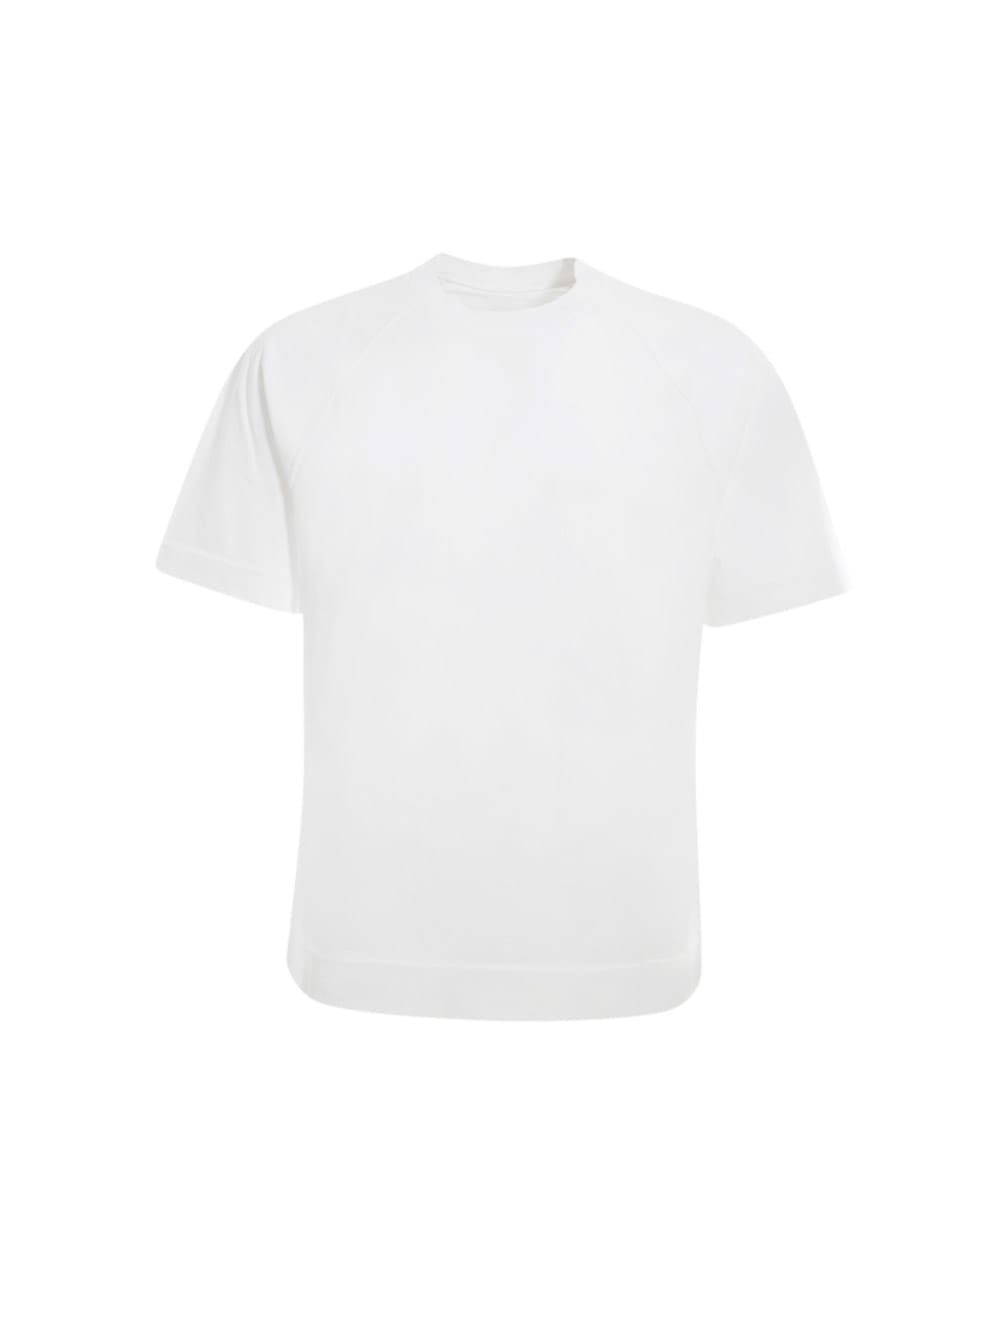 Circolo 1901 T-shirt Raglan Jersey